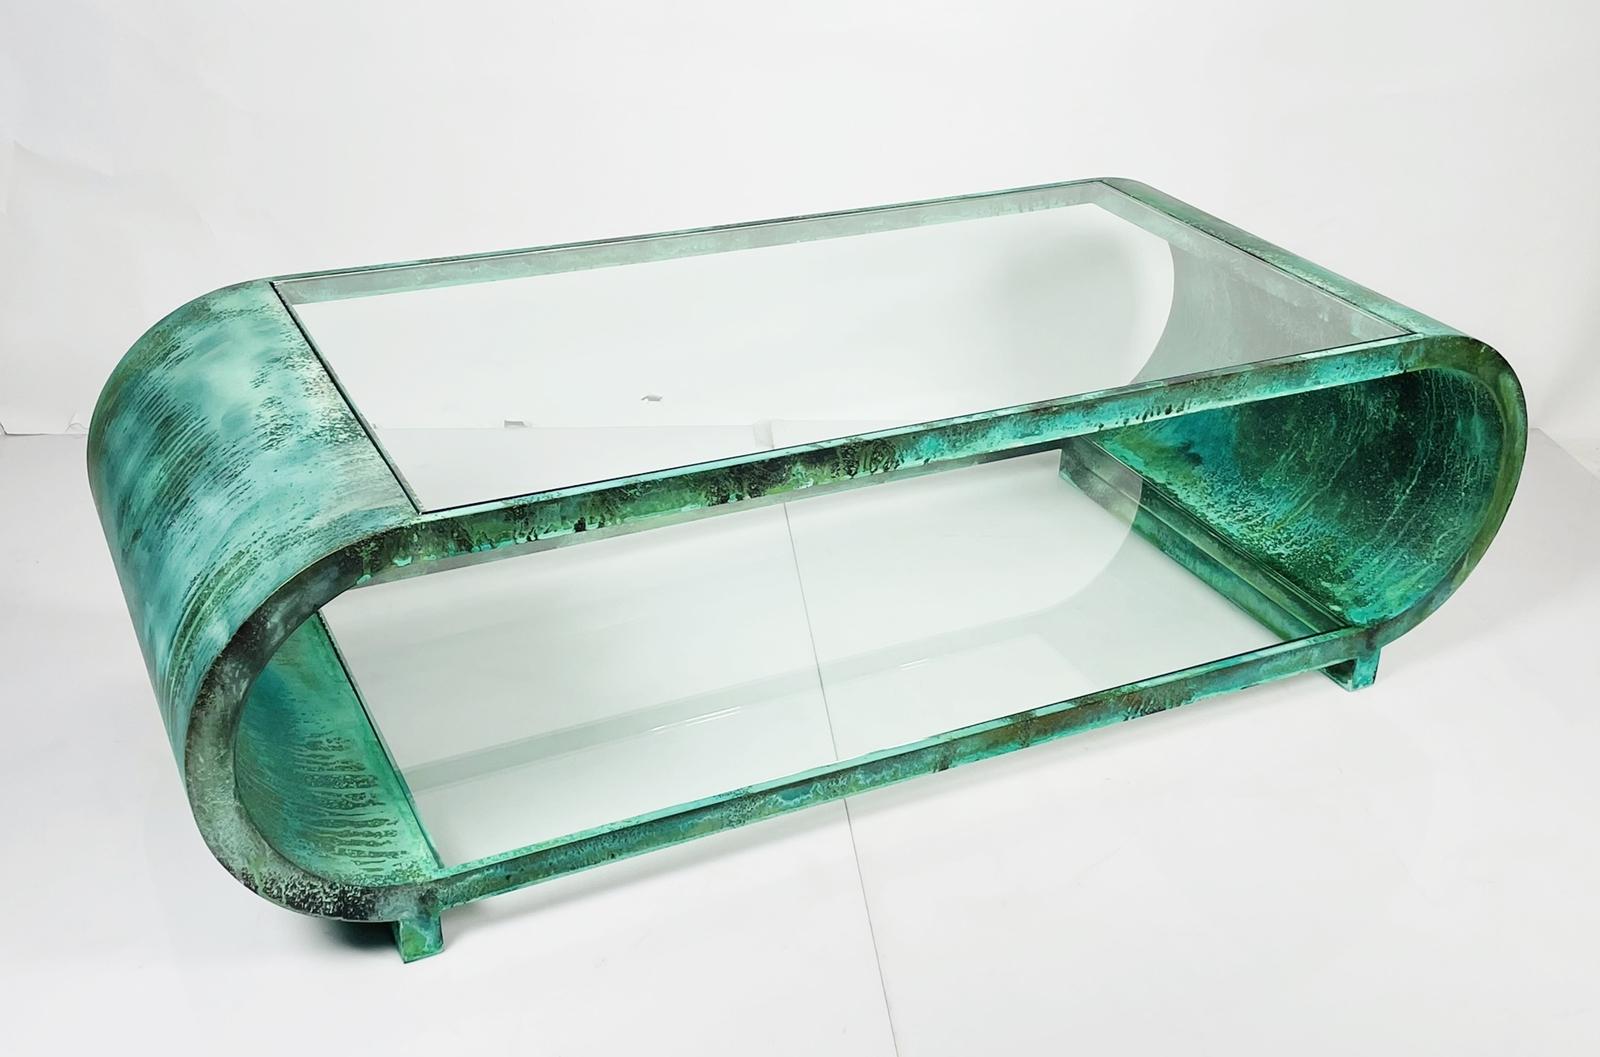 Superbe table basse conçue par Amparo Calderon Tapia et fabriquée à Los Angeles en Californie en 2022.
La table est fabriquée en cuivre massif avec une finition vieillie à l'acide.
Les lignes continues sur le cadre de la table sont un clin d'œil au